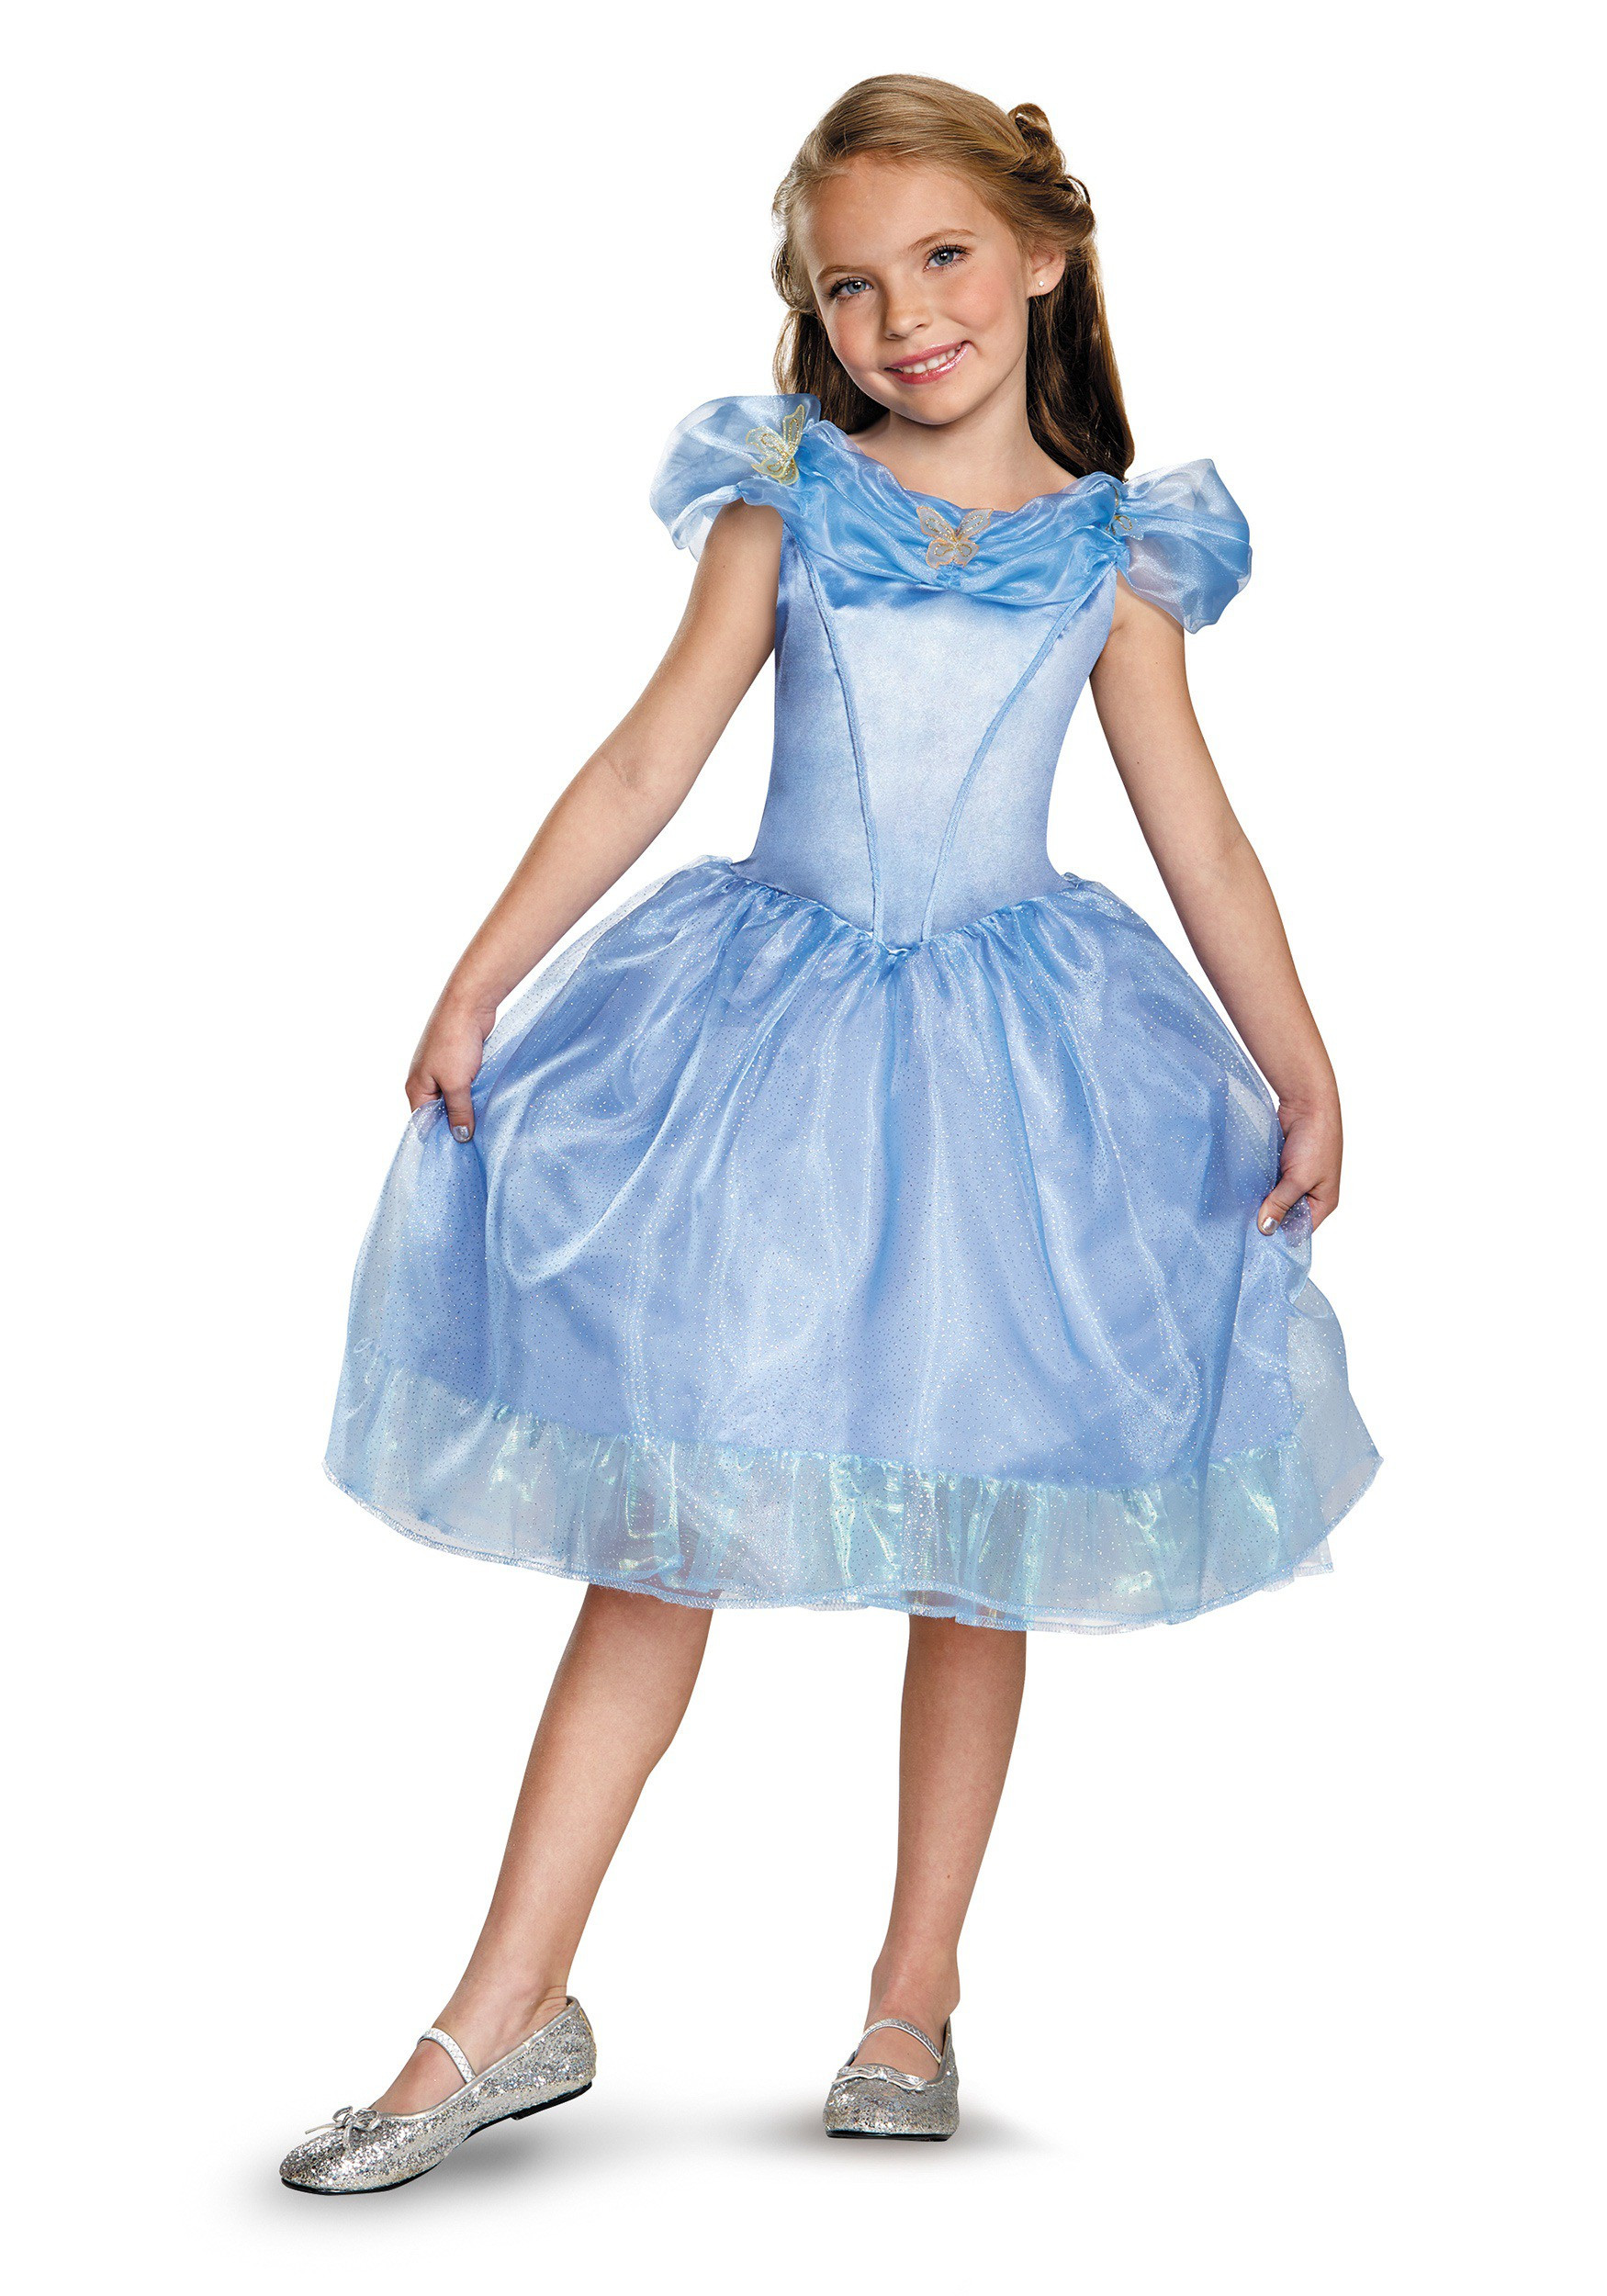 Cinderella DIY Costumes
 Girls Classic Cinderella Movie Costume